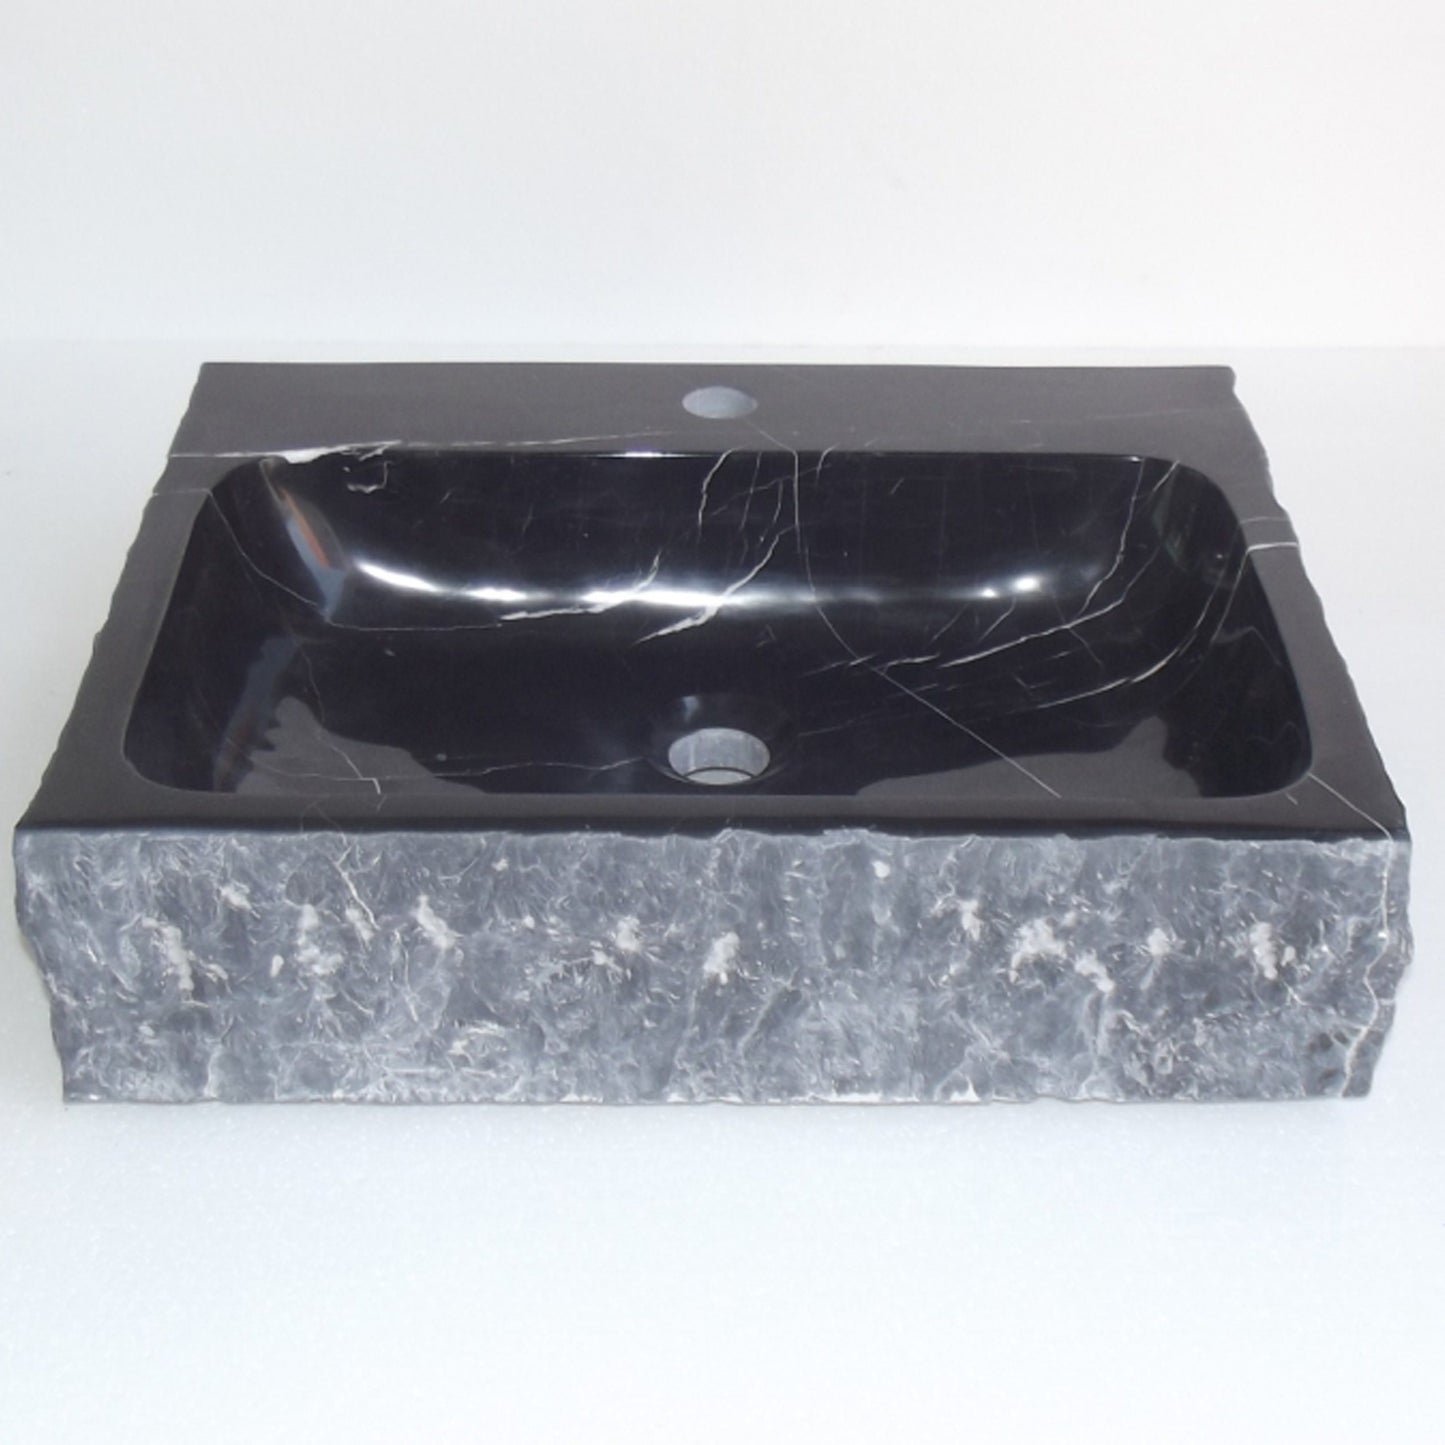 Eviva Stonie 20 in. Black Marble Vessel Sink - Luxe Bathroom Vanities Luxury Bathroom Fixtures Bathroom Furniture